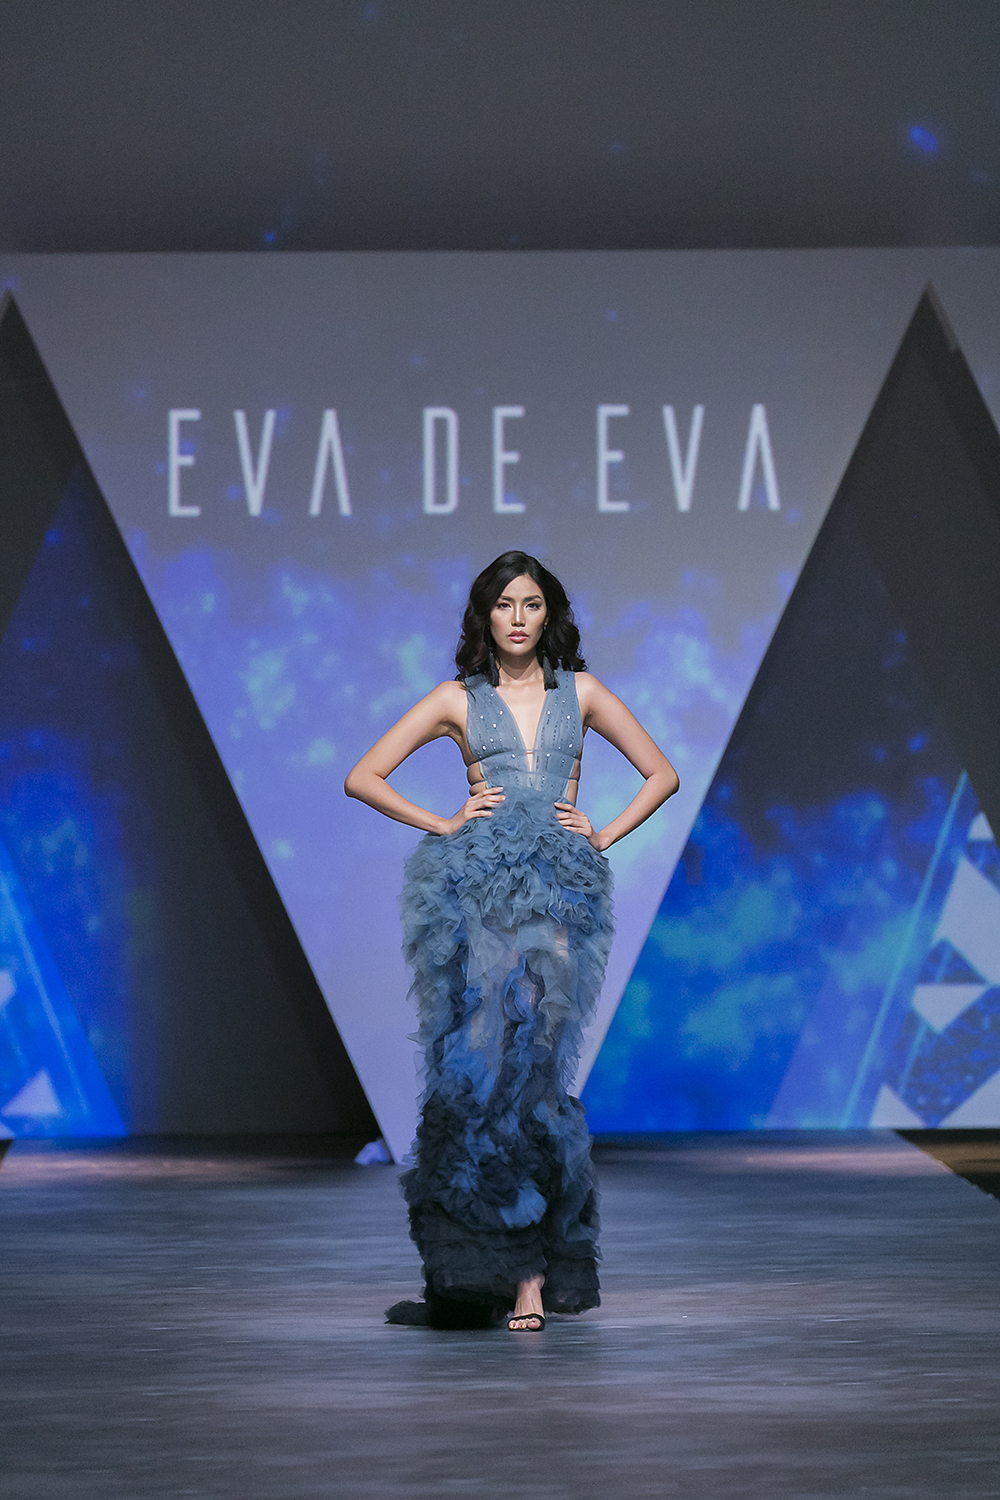 Trong vai trò Vedette, Hoa khôi Áo dài Lan Khuê trong thiết kế váy dạ hội bay bổng đã viết lên cái kết đẹp đẽ cho show diễn kỉ niệm 10 năm thương hiệu Eva de Eva; cũng là đêm bế mạc đầy ấn tượng cho sự kiện thời trang đẳng cấp Tuần lễ thời trang Quốc tế Việt Nam.